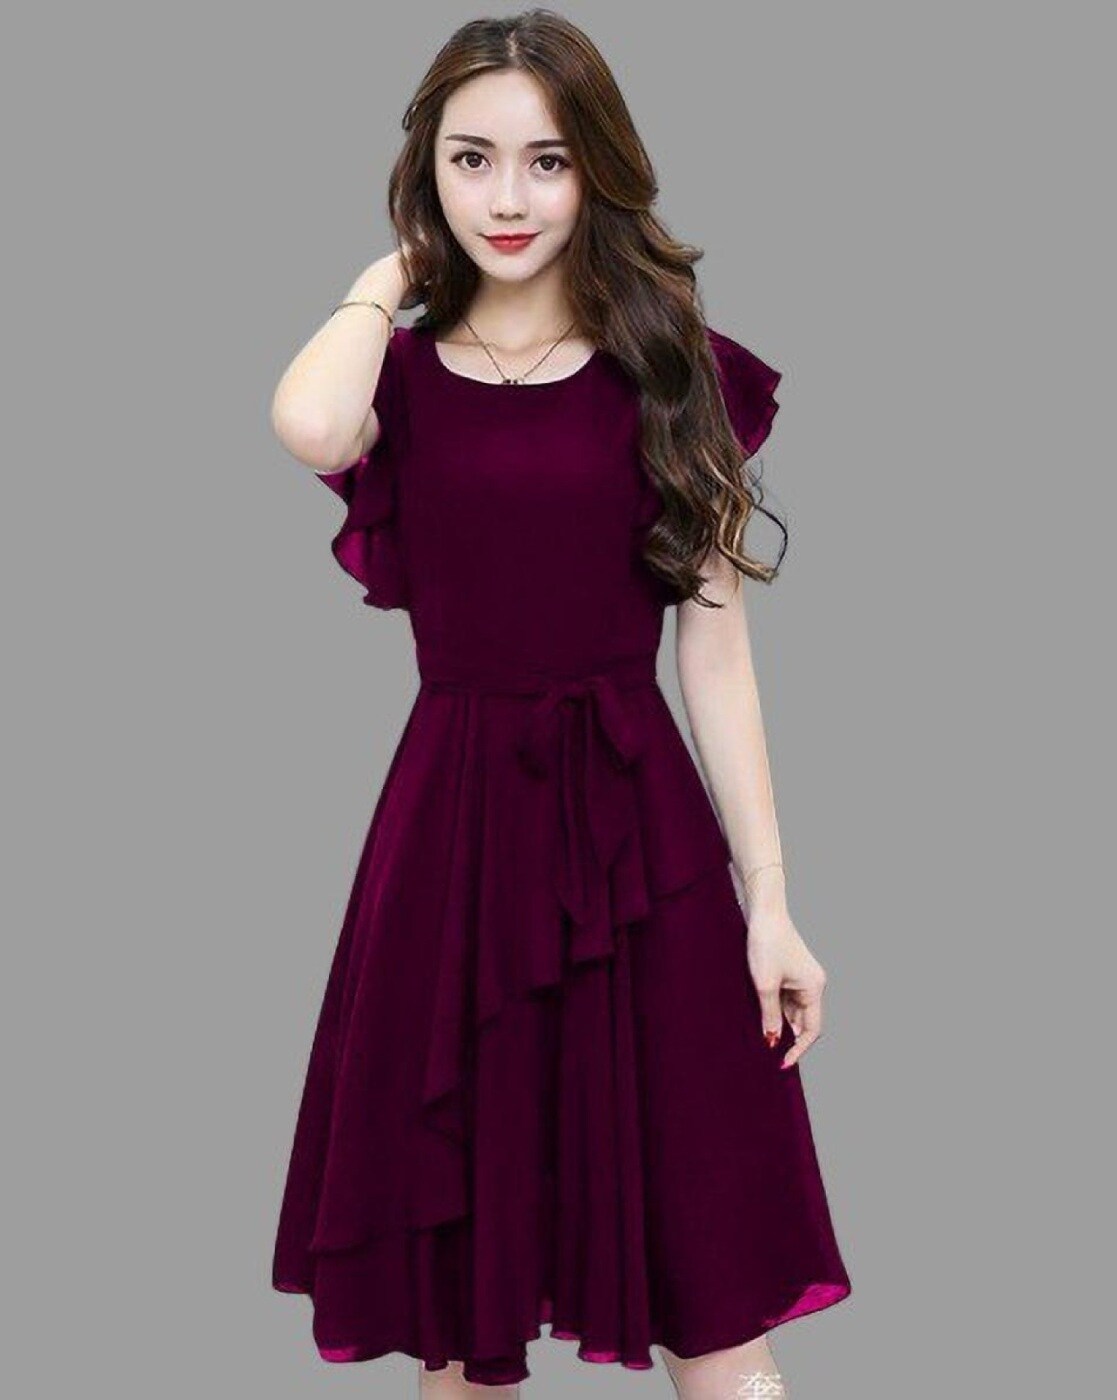 Dresses from Dresstells for Women in Purple| Stylight